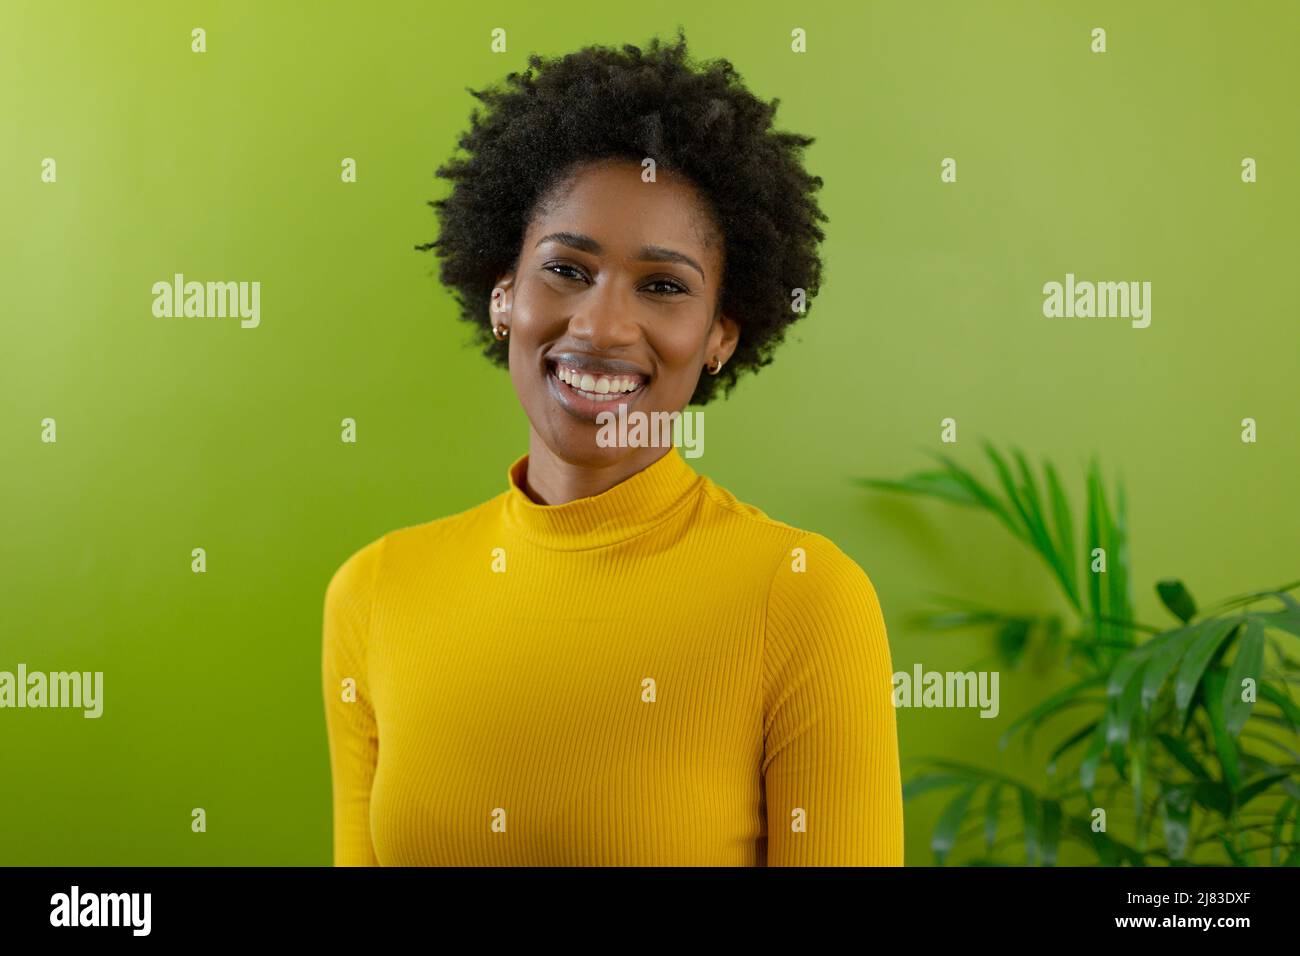 Porträt einer lächelnden jungen afroamerikanischen Geschäftsfrau mit Afro-Frisur gegen die grüne Wand Stockfoto